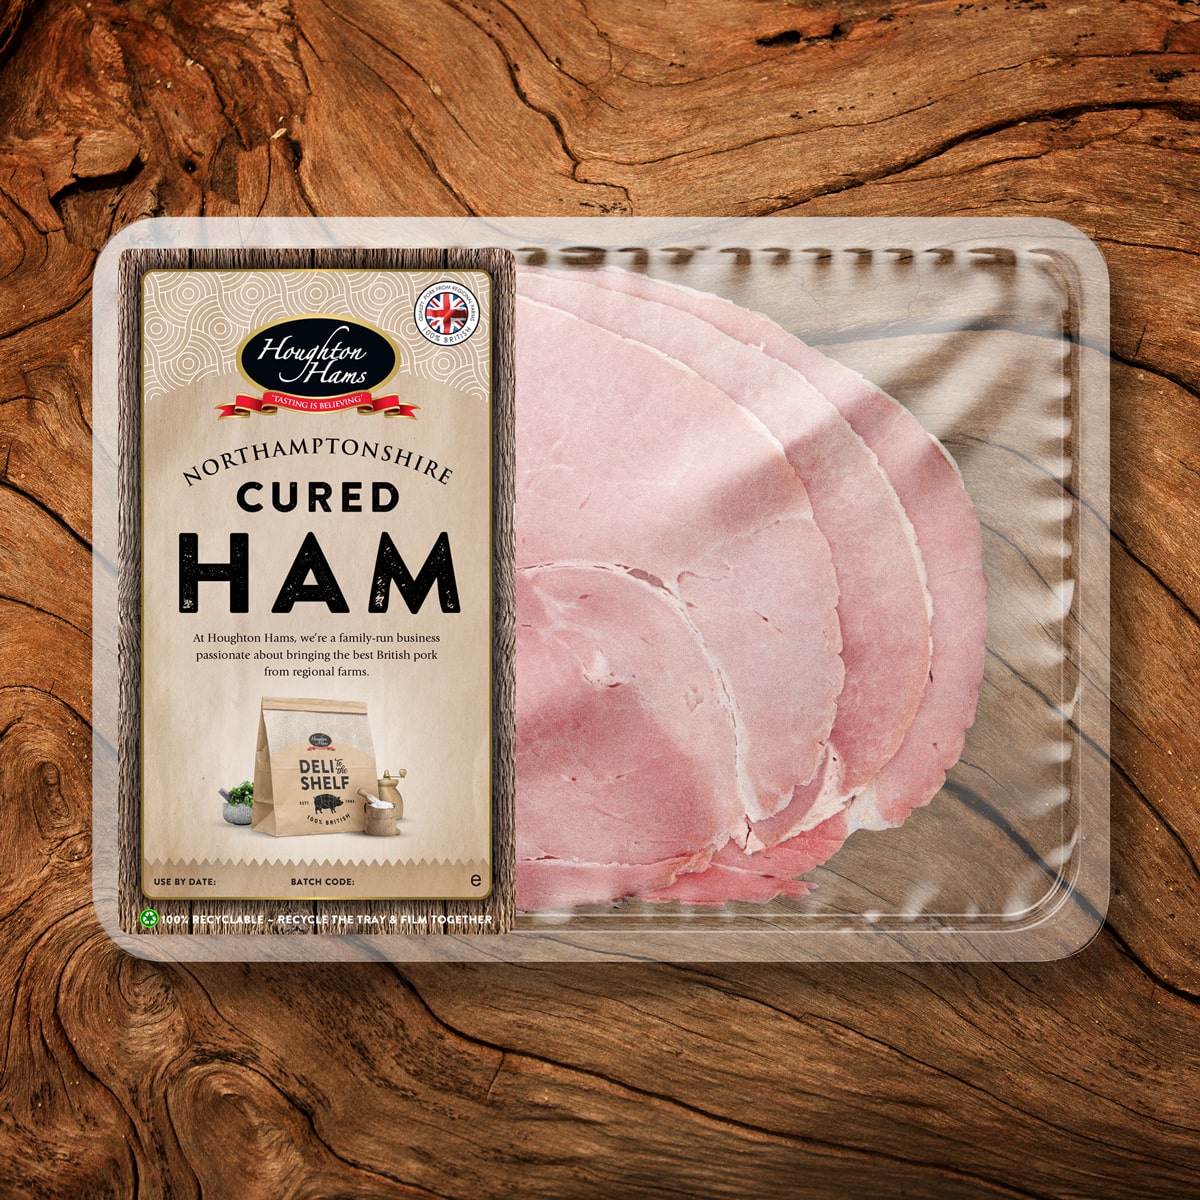 Where does the term Ham originate?